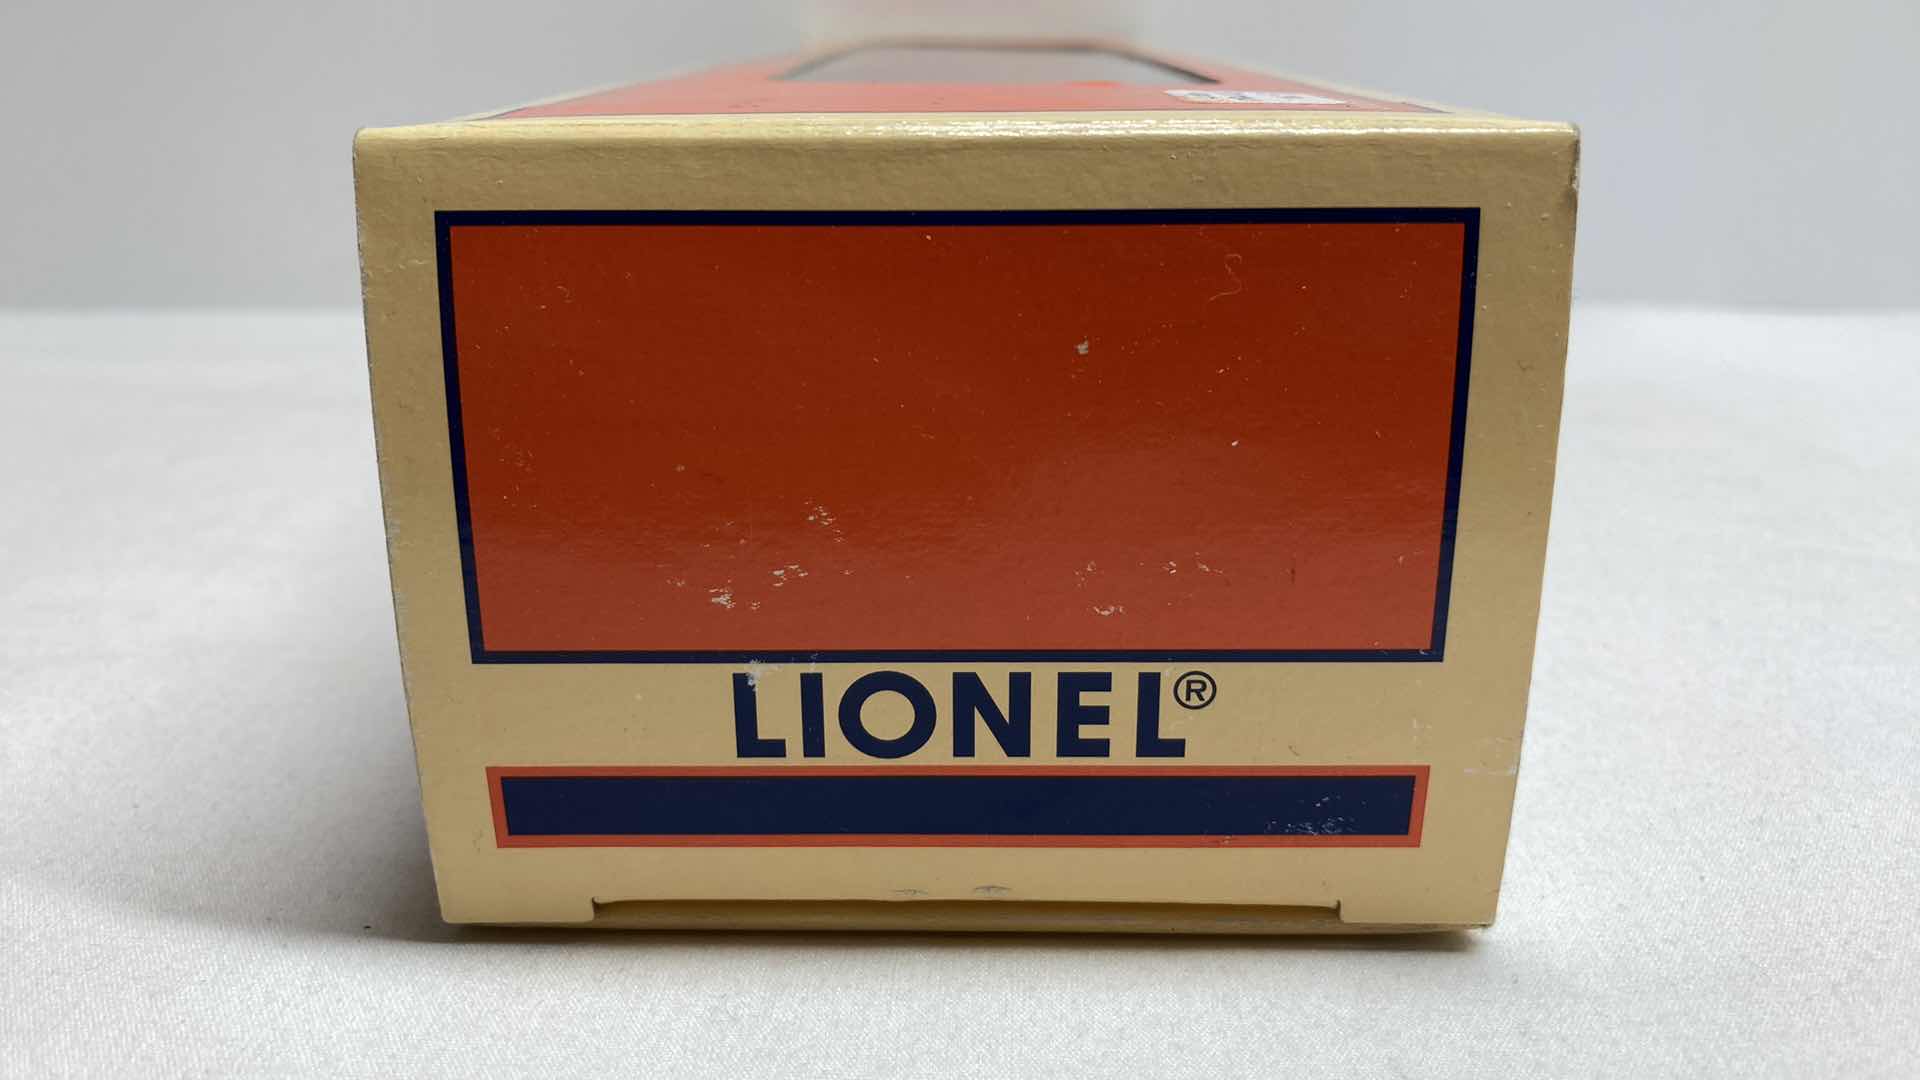 Photo 5 of LIONEL BALTIMORE & OHIO TIMESAVER BOX CAR 6-19294